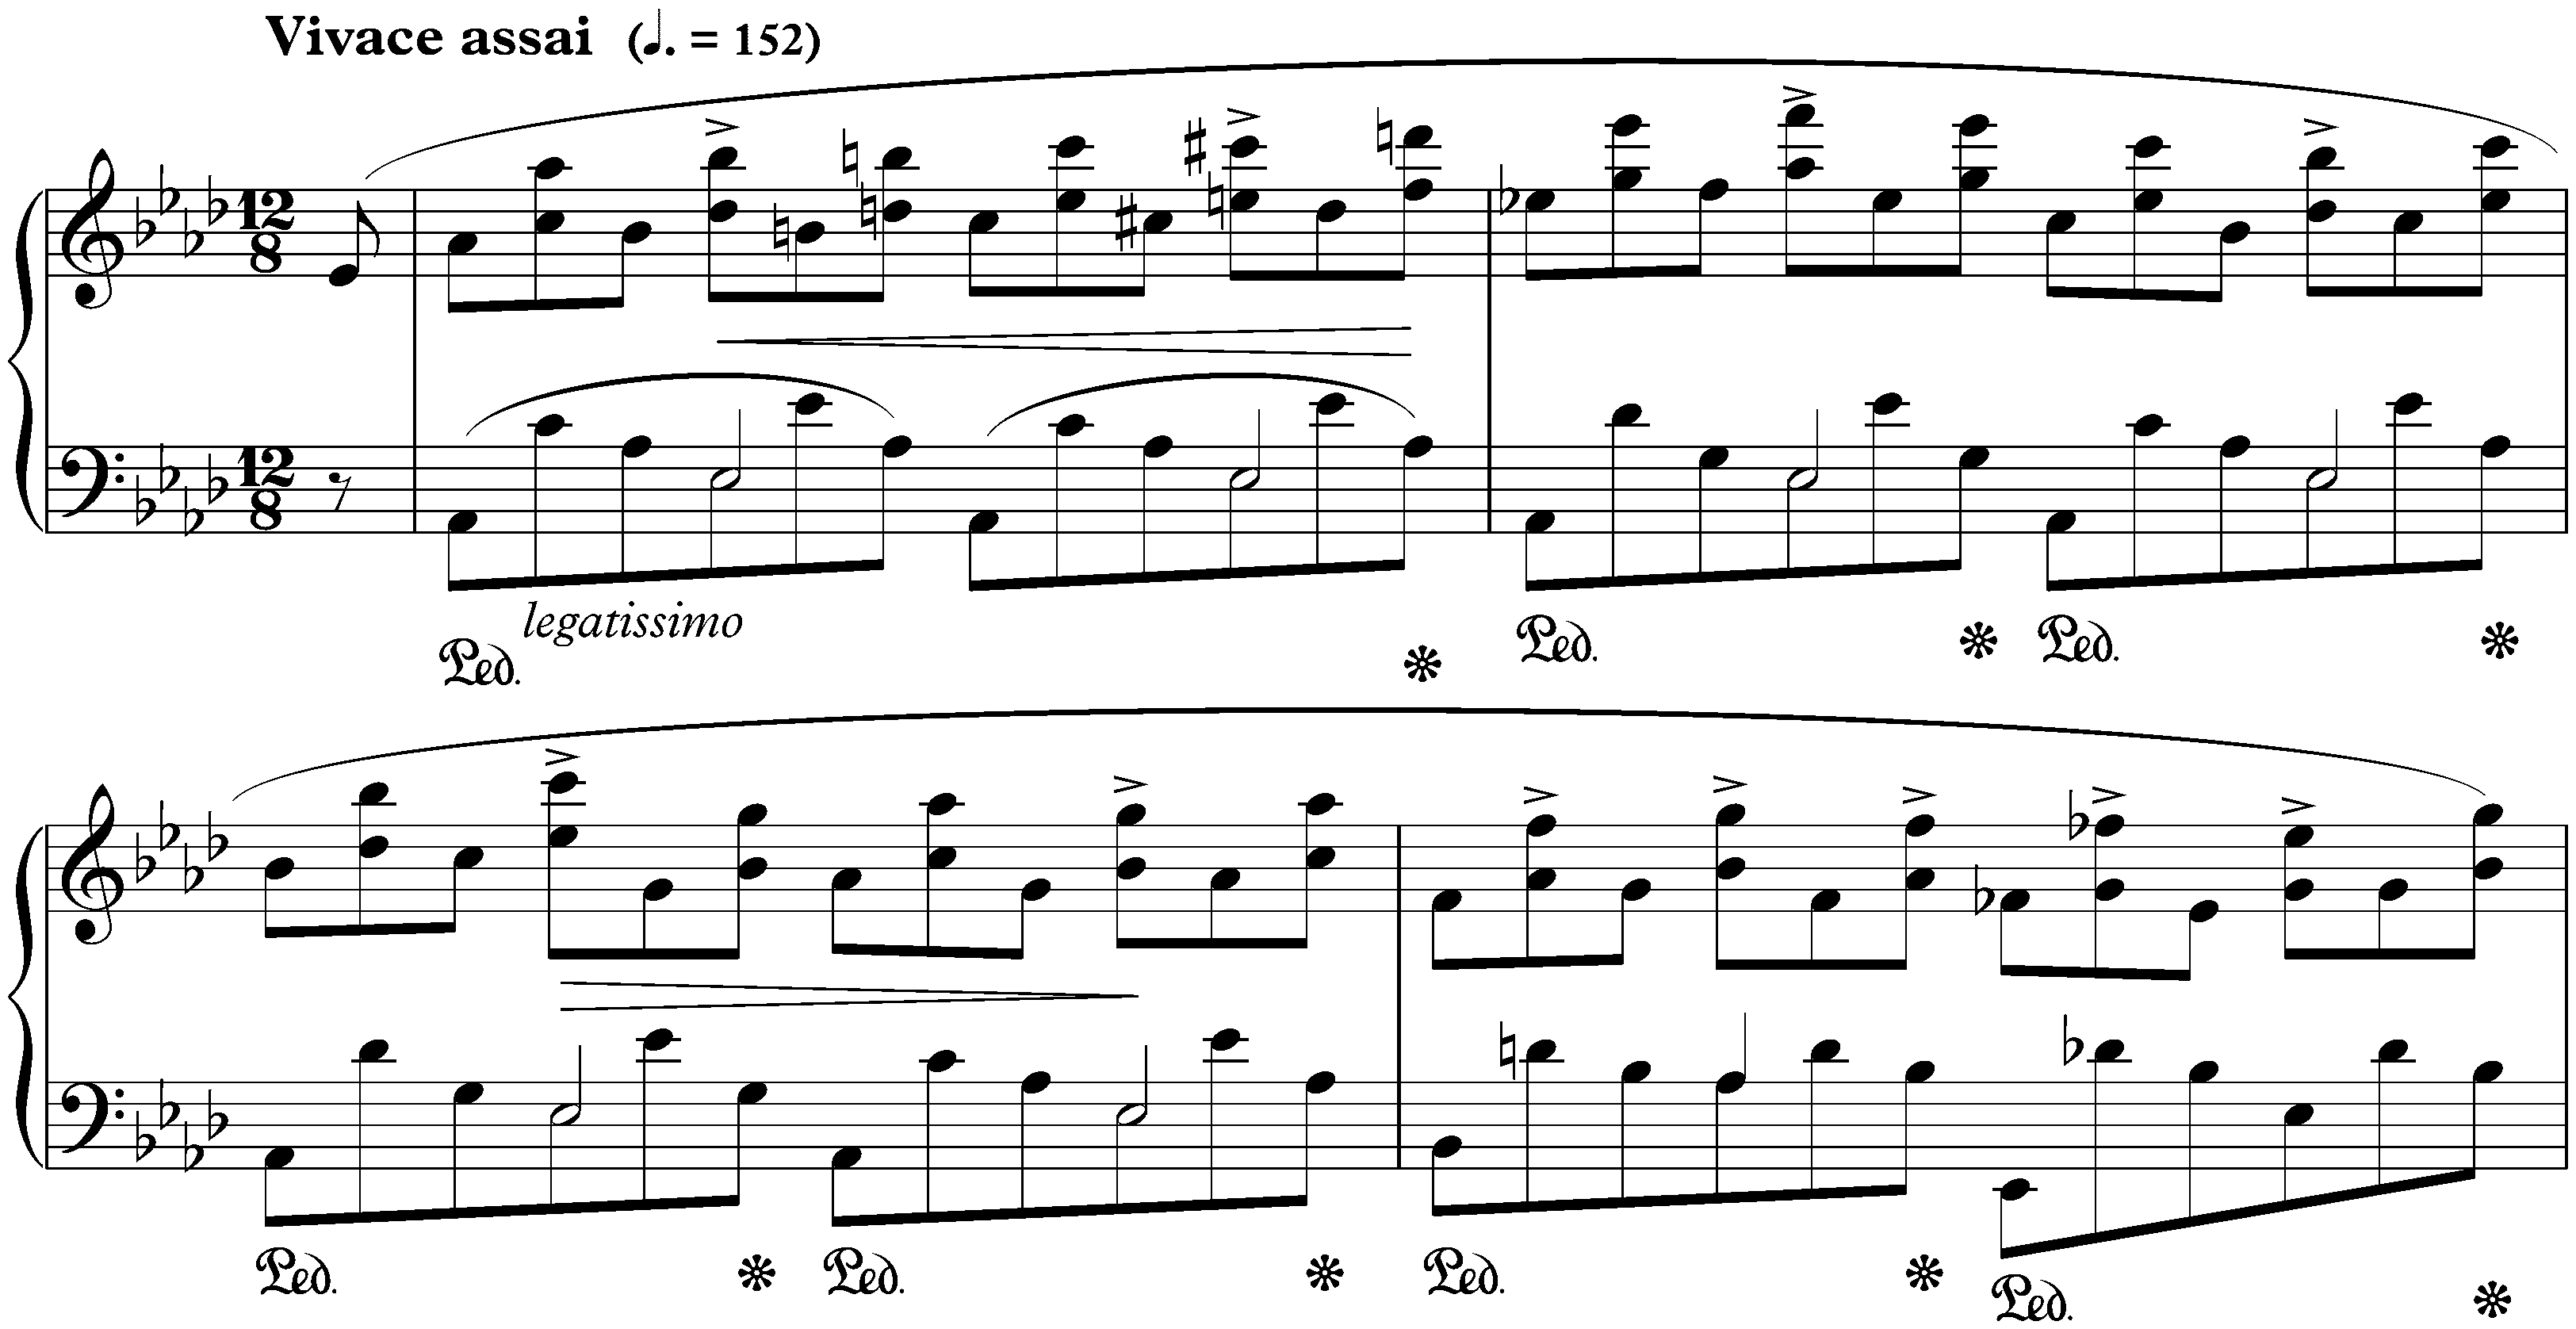 Twelve Études, op. 10; 10. A-flat major